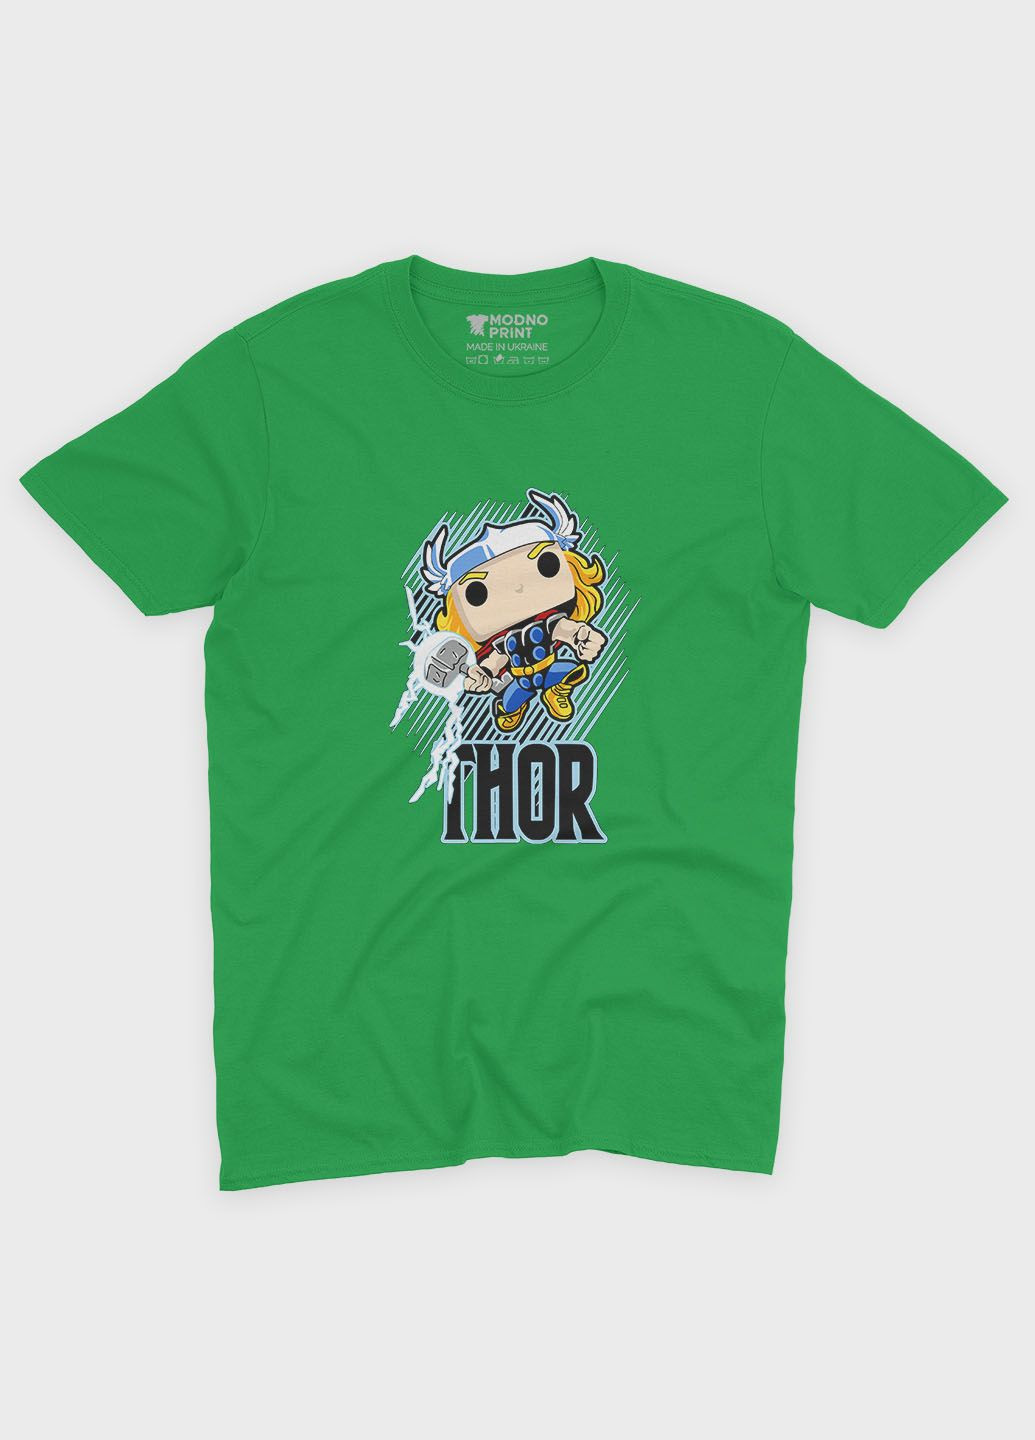 Зелена демісезонна футболка для хлопчика з принтом супергероя - тор (ts001-1-keg-006-024-003-b) Modno